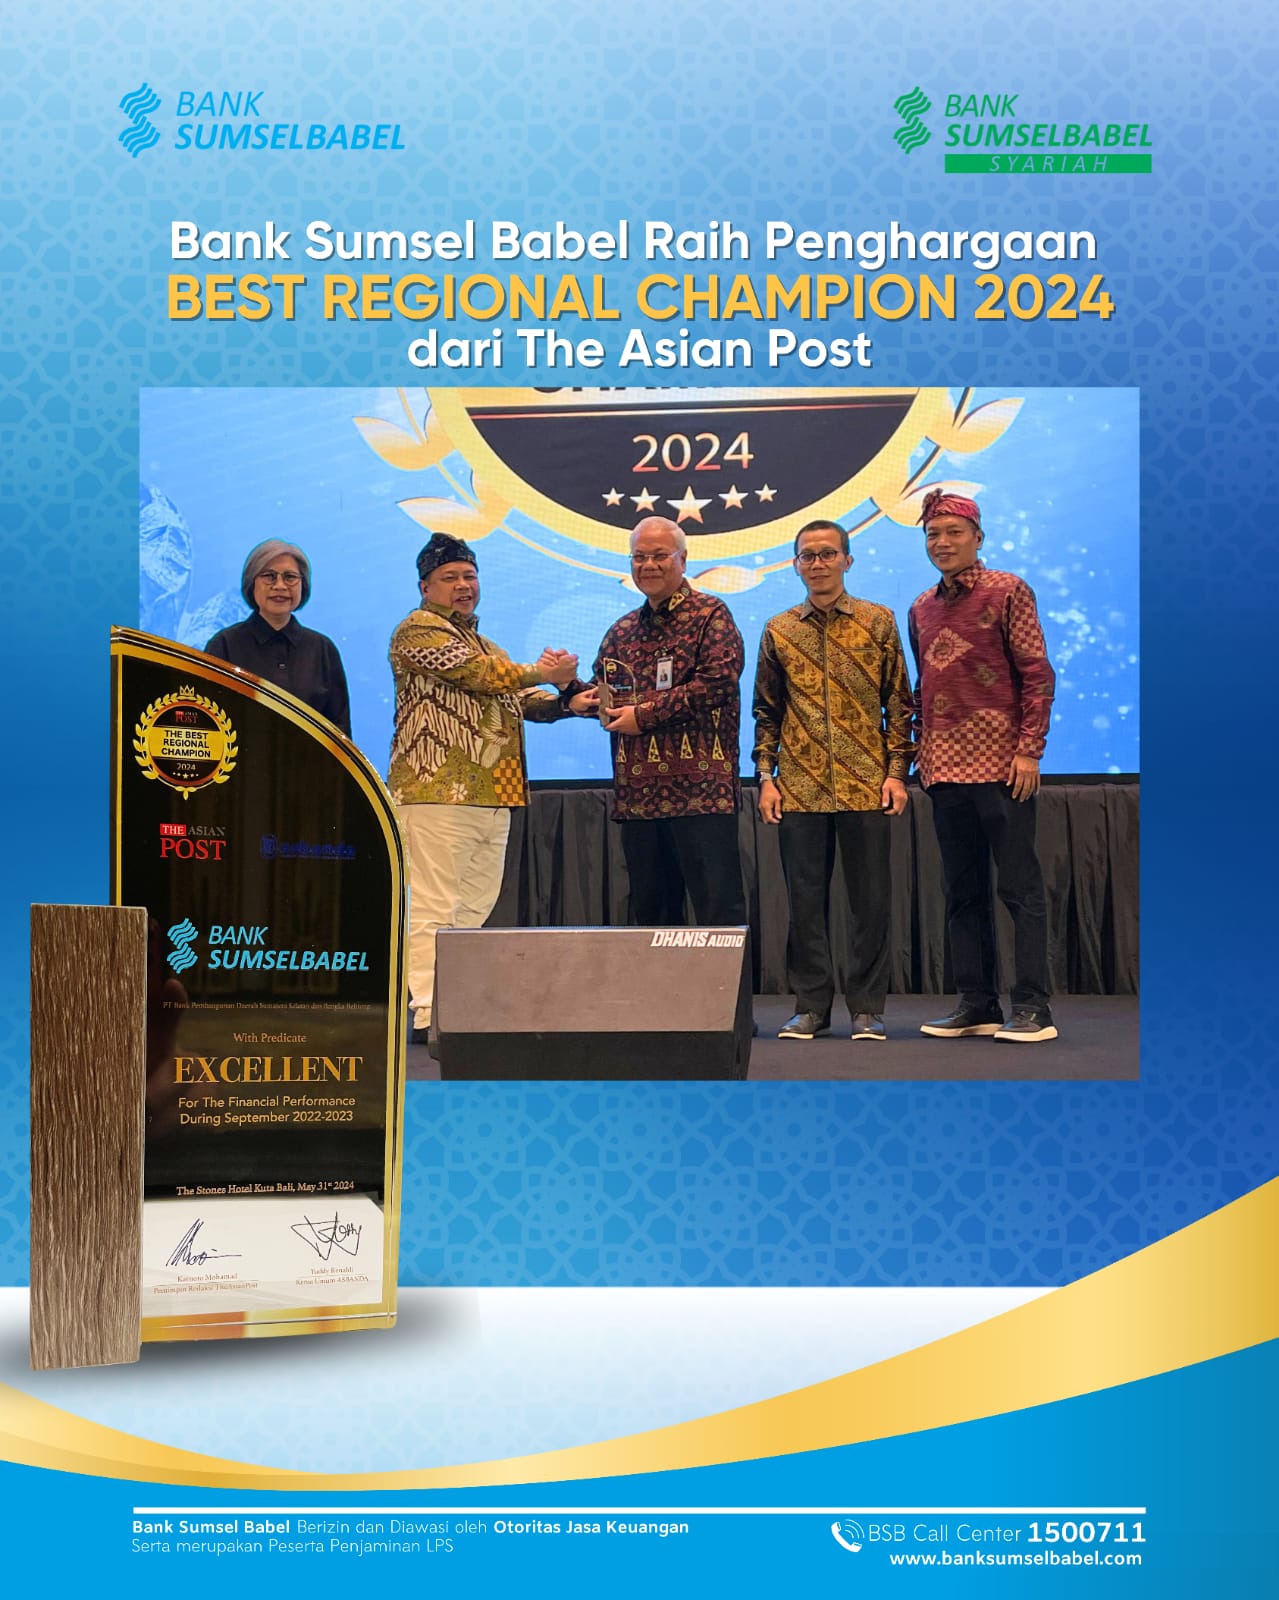 Bank Sumsel Babel Raih Penghargaan Sebagai Best Regional Champion 2024 oleh The Asian Post